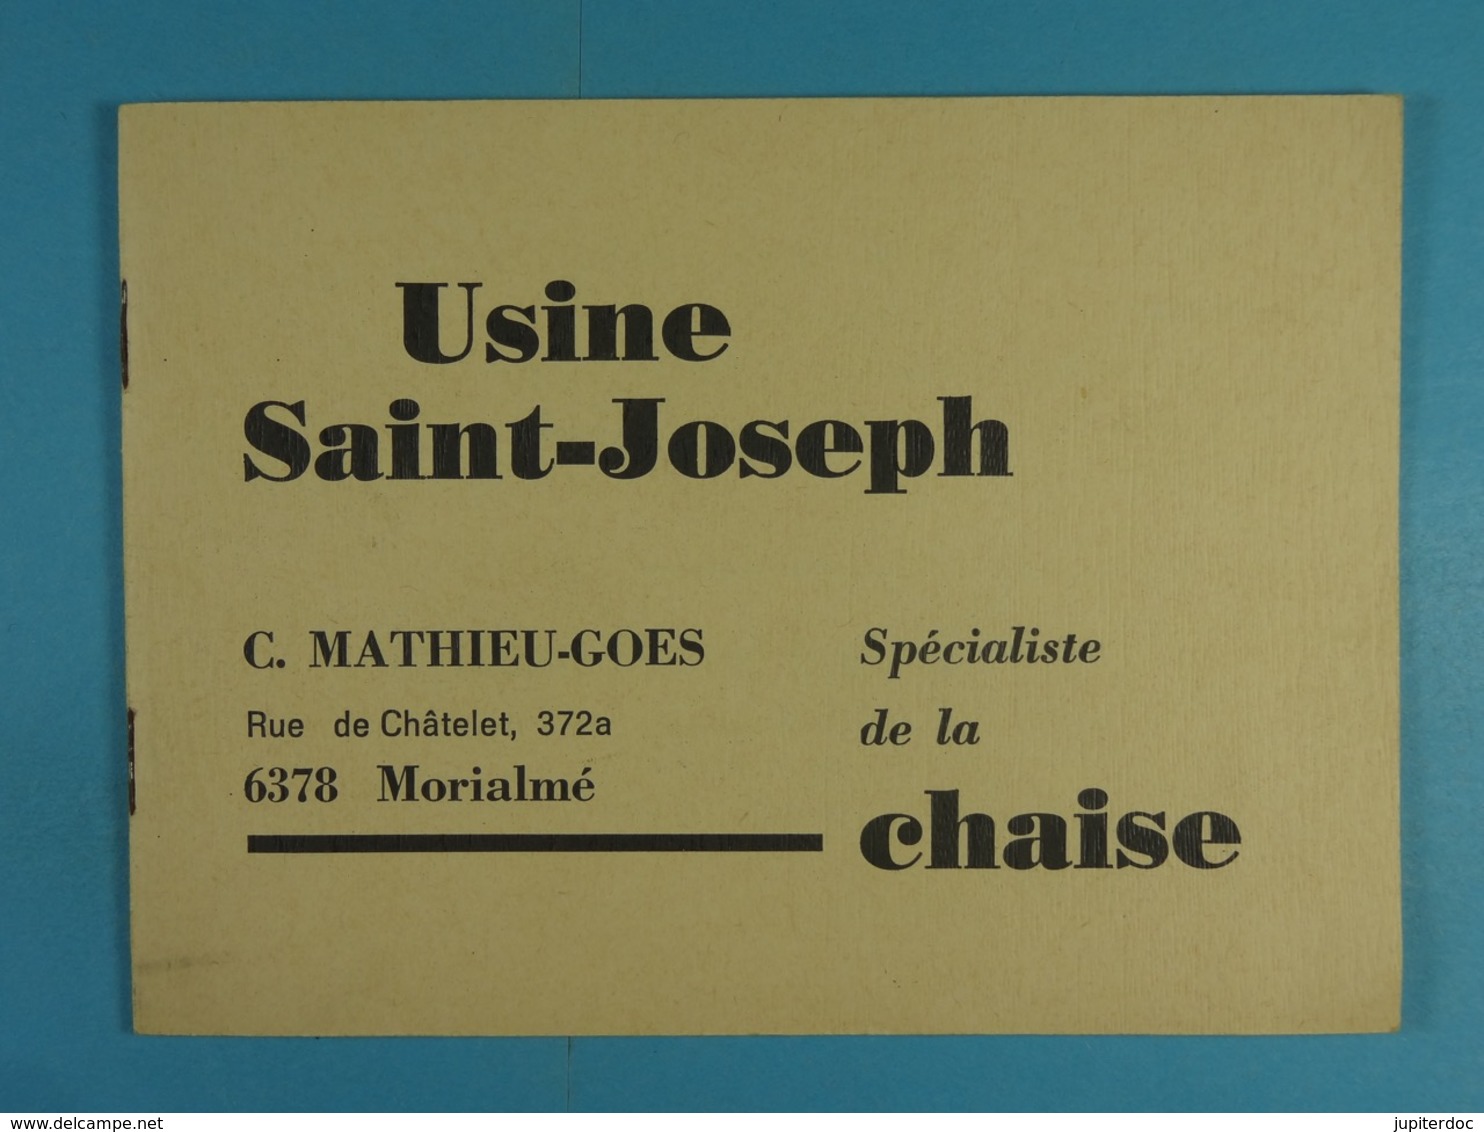 Usine Saint-Joseph Morialmé Mathieu-Goes Spécialiste De La Chaise - Supplies And Equipment